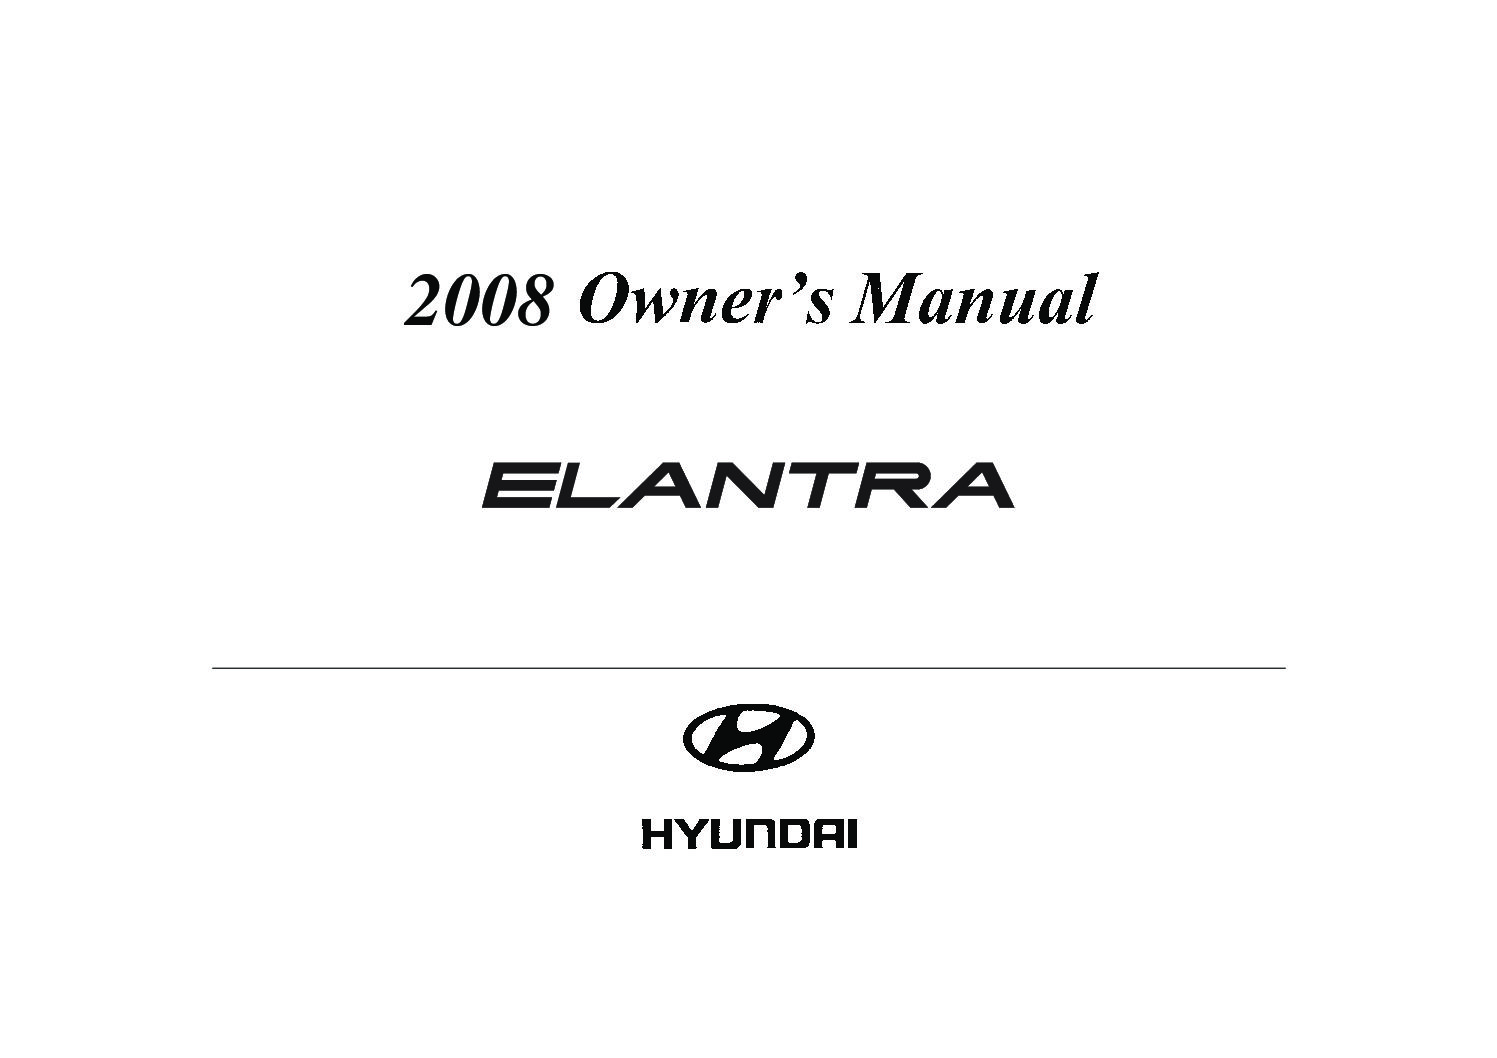 2008 hyundai elantra owners manual